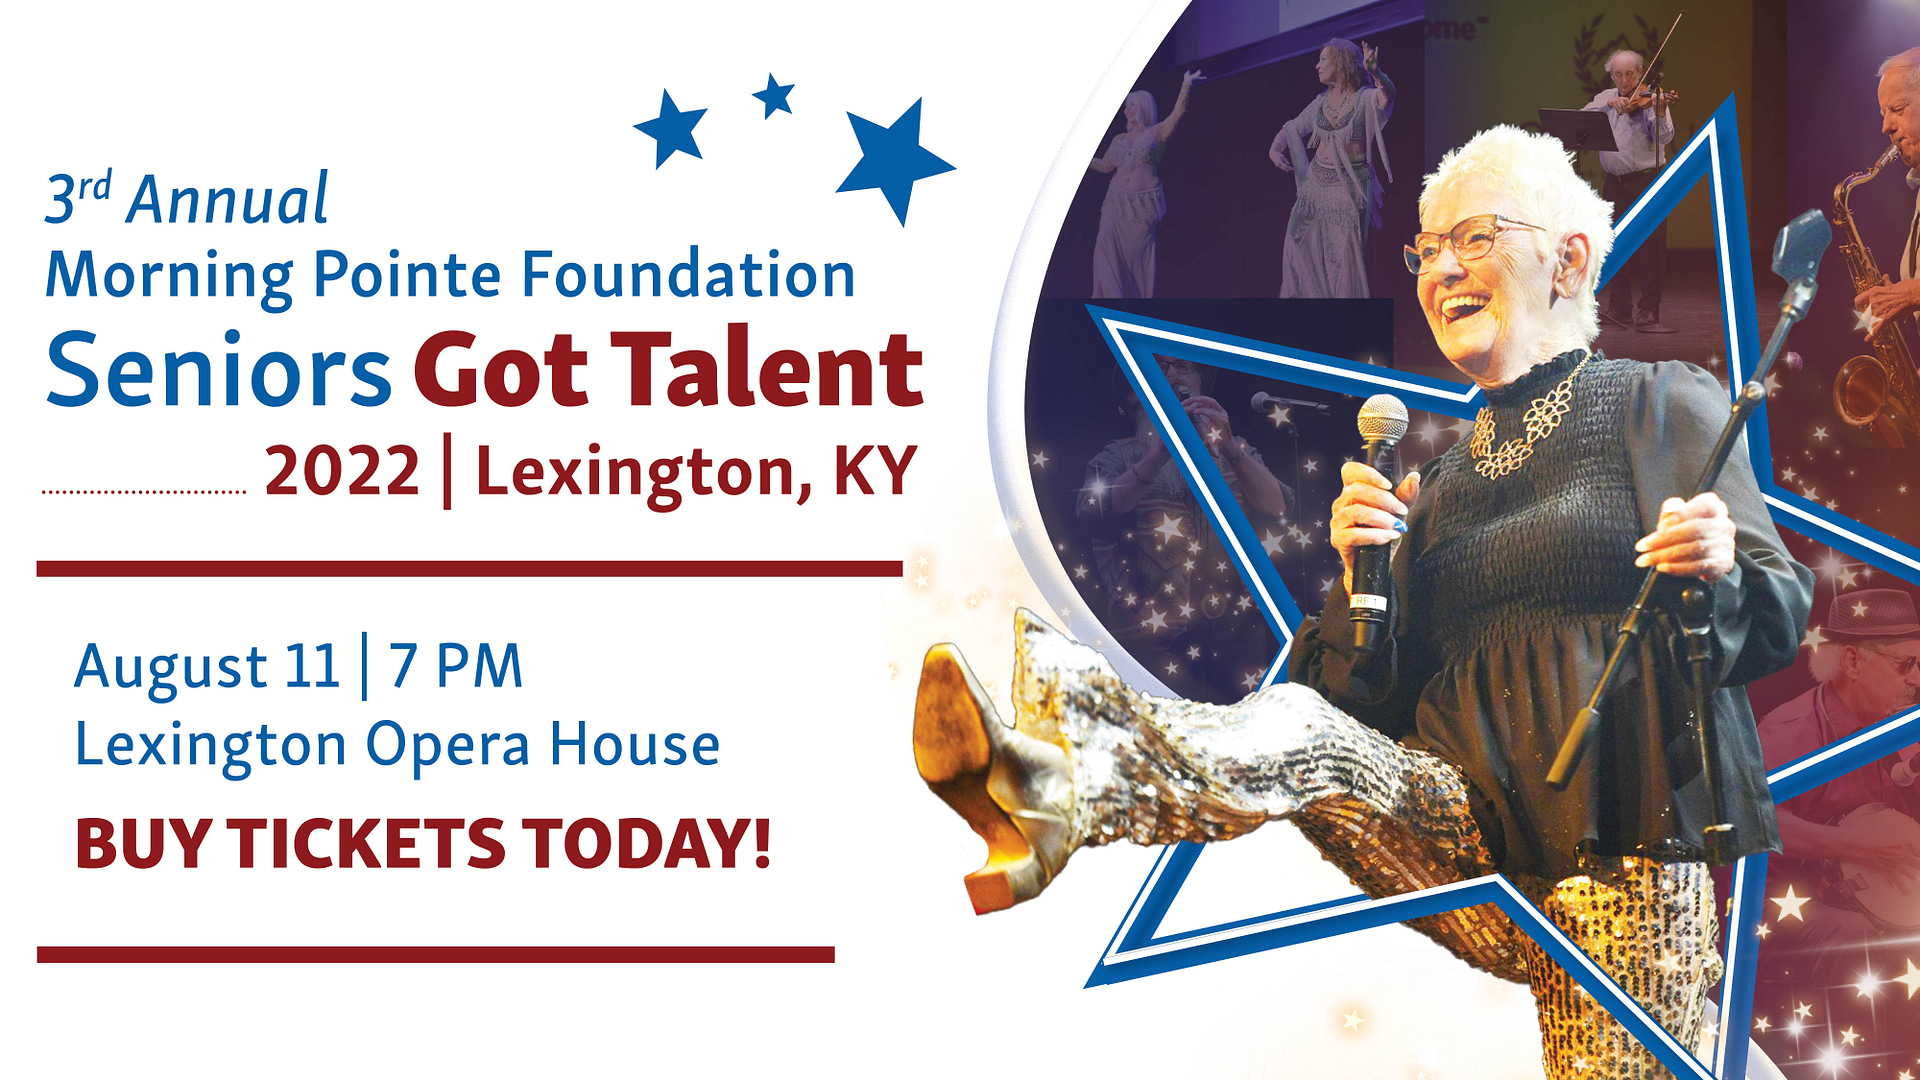 Seniors Got Talent Lexington ad, buy tickets now